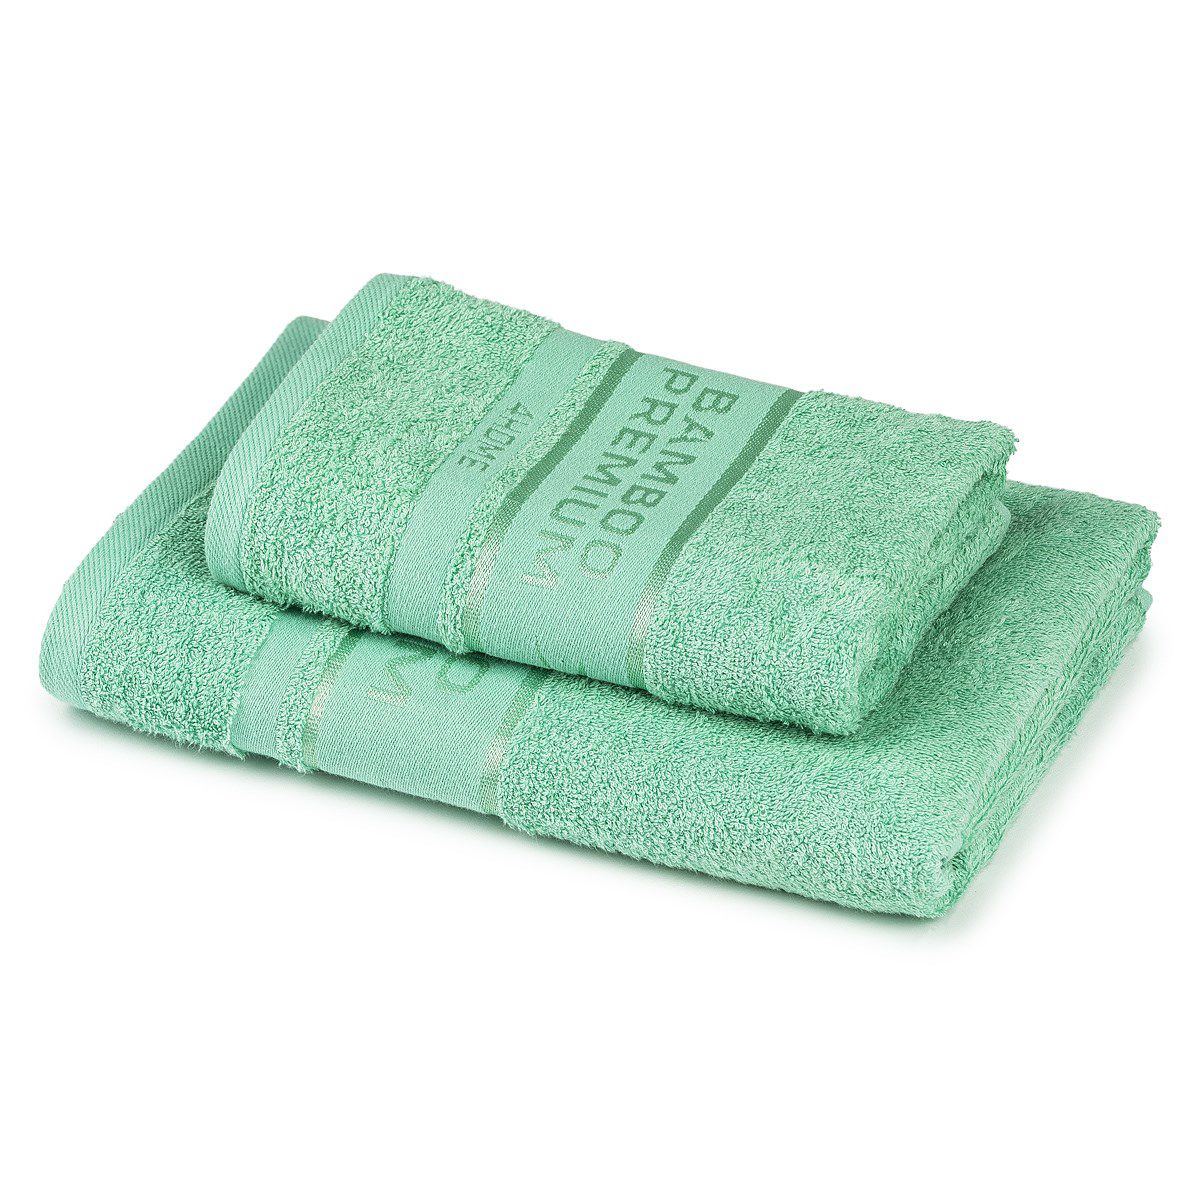 4Home Sada Bamboo Premium osuška a ručník mentolová, 70 x 140 cm, 50 x 100 cm - 4home.cz